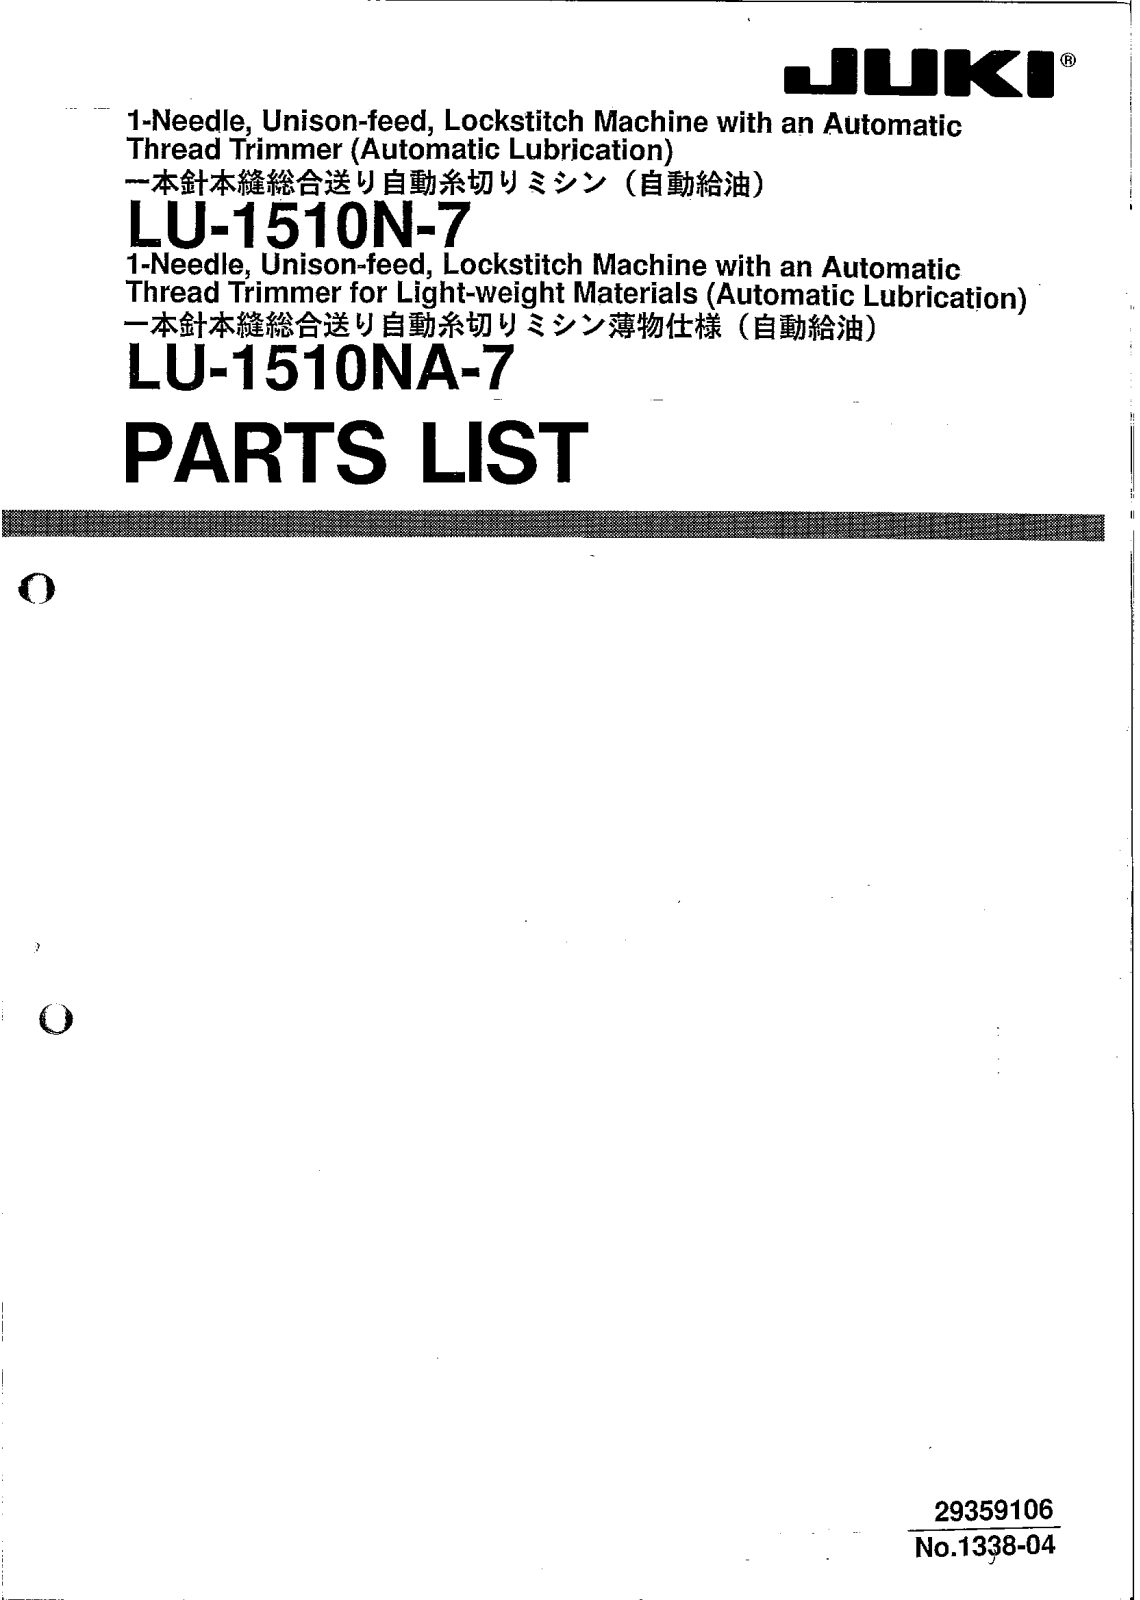 JUKI LU-1510N-7, LU-1510NA-7 Parts List